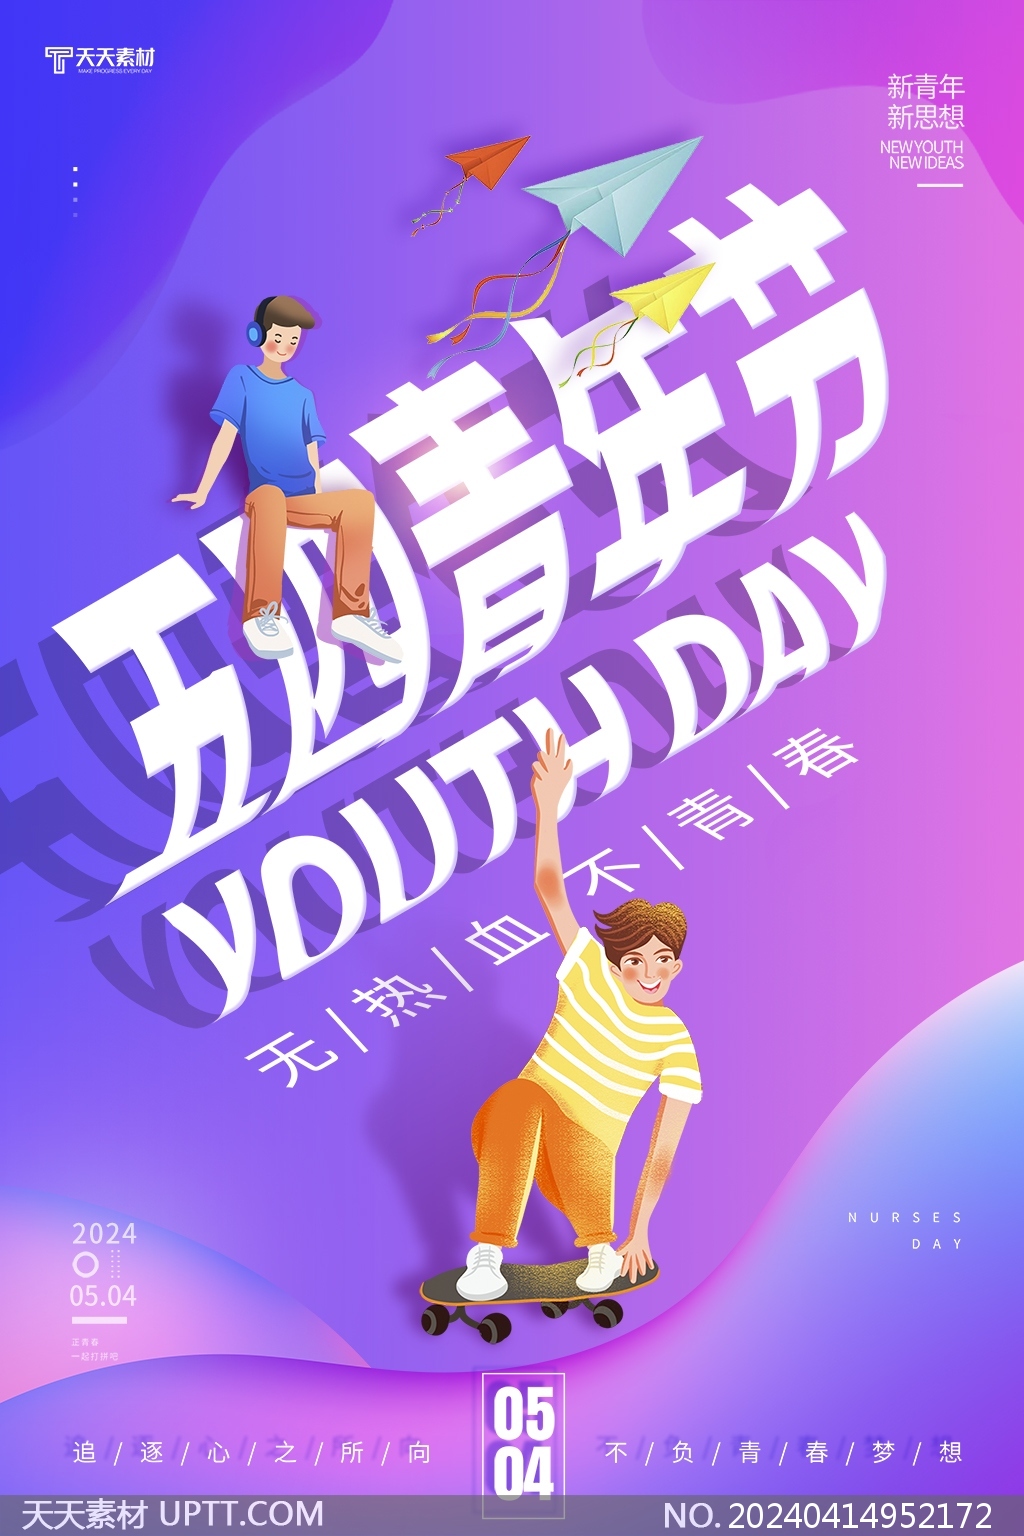 无热血不青春54青年节紫色卡通风格海报设计